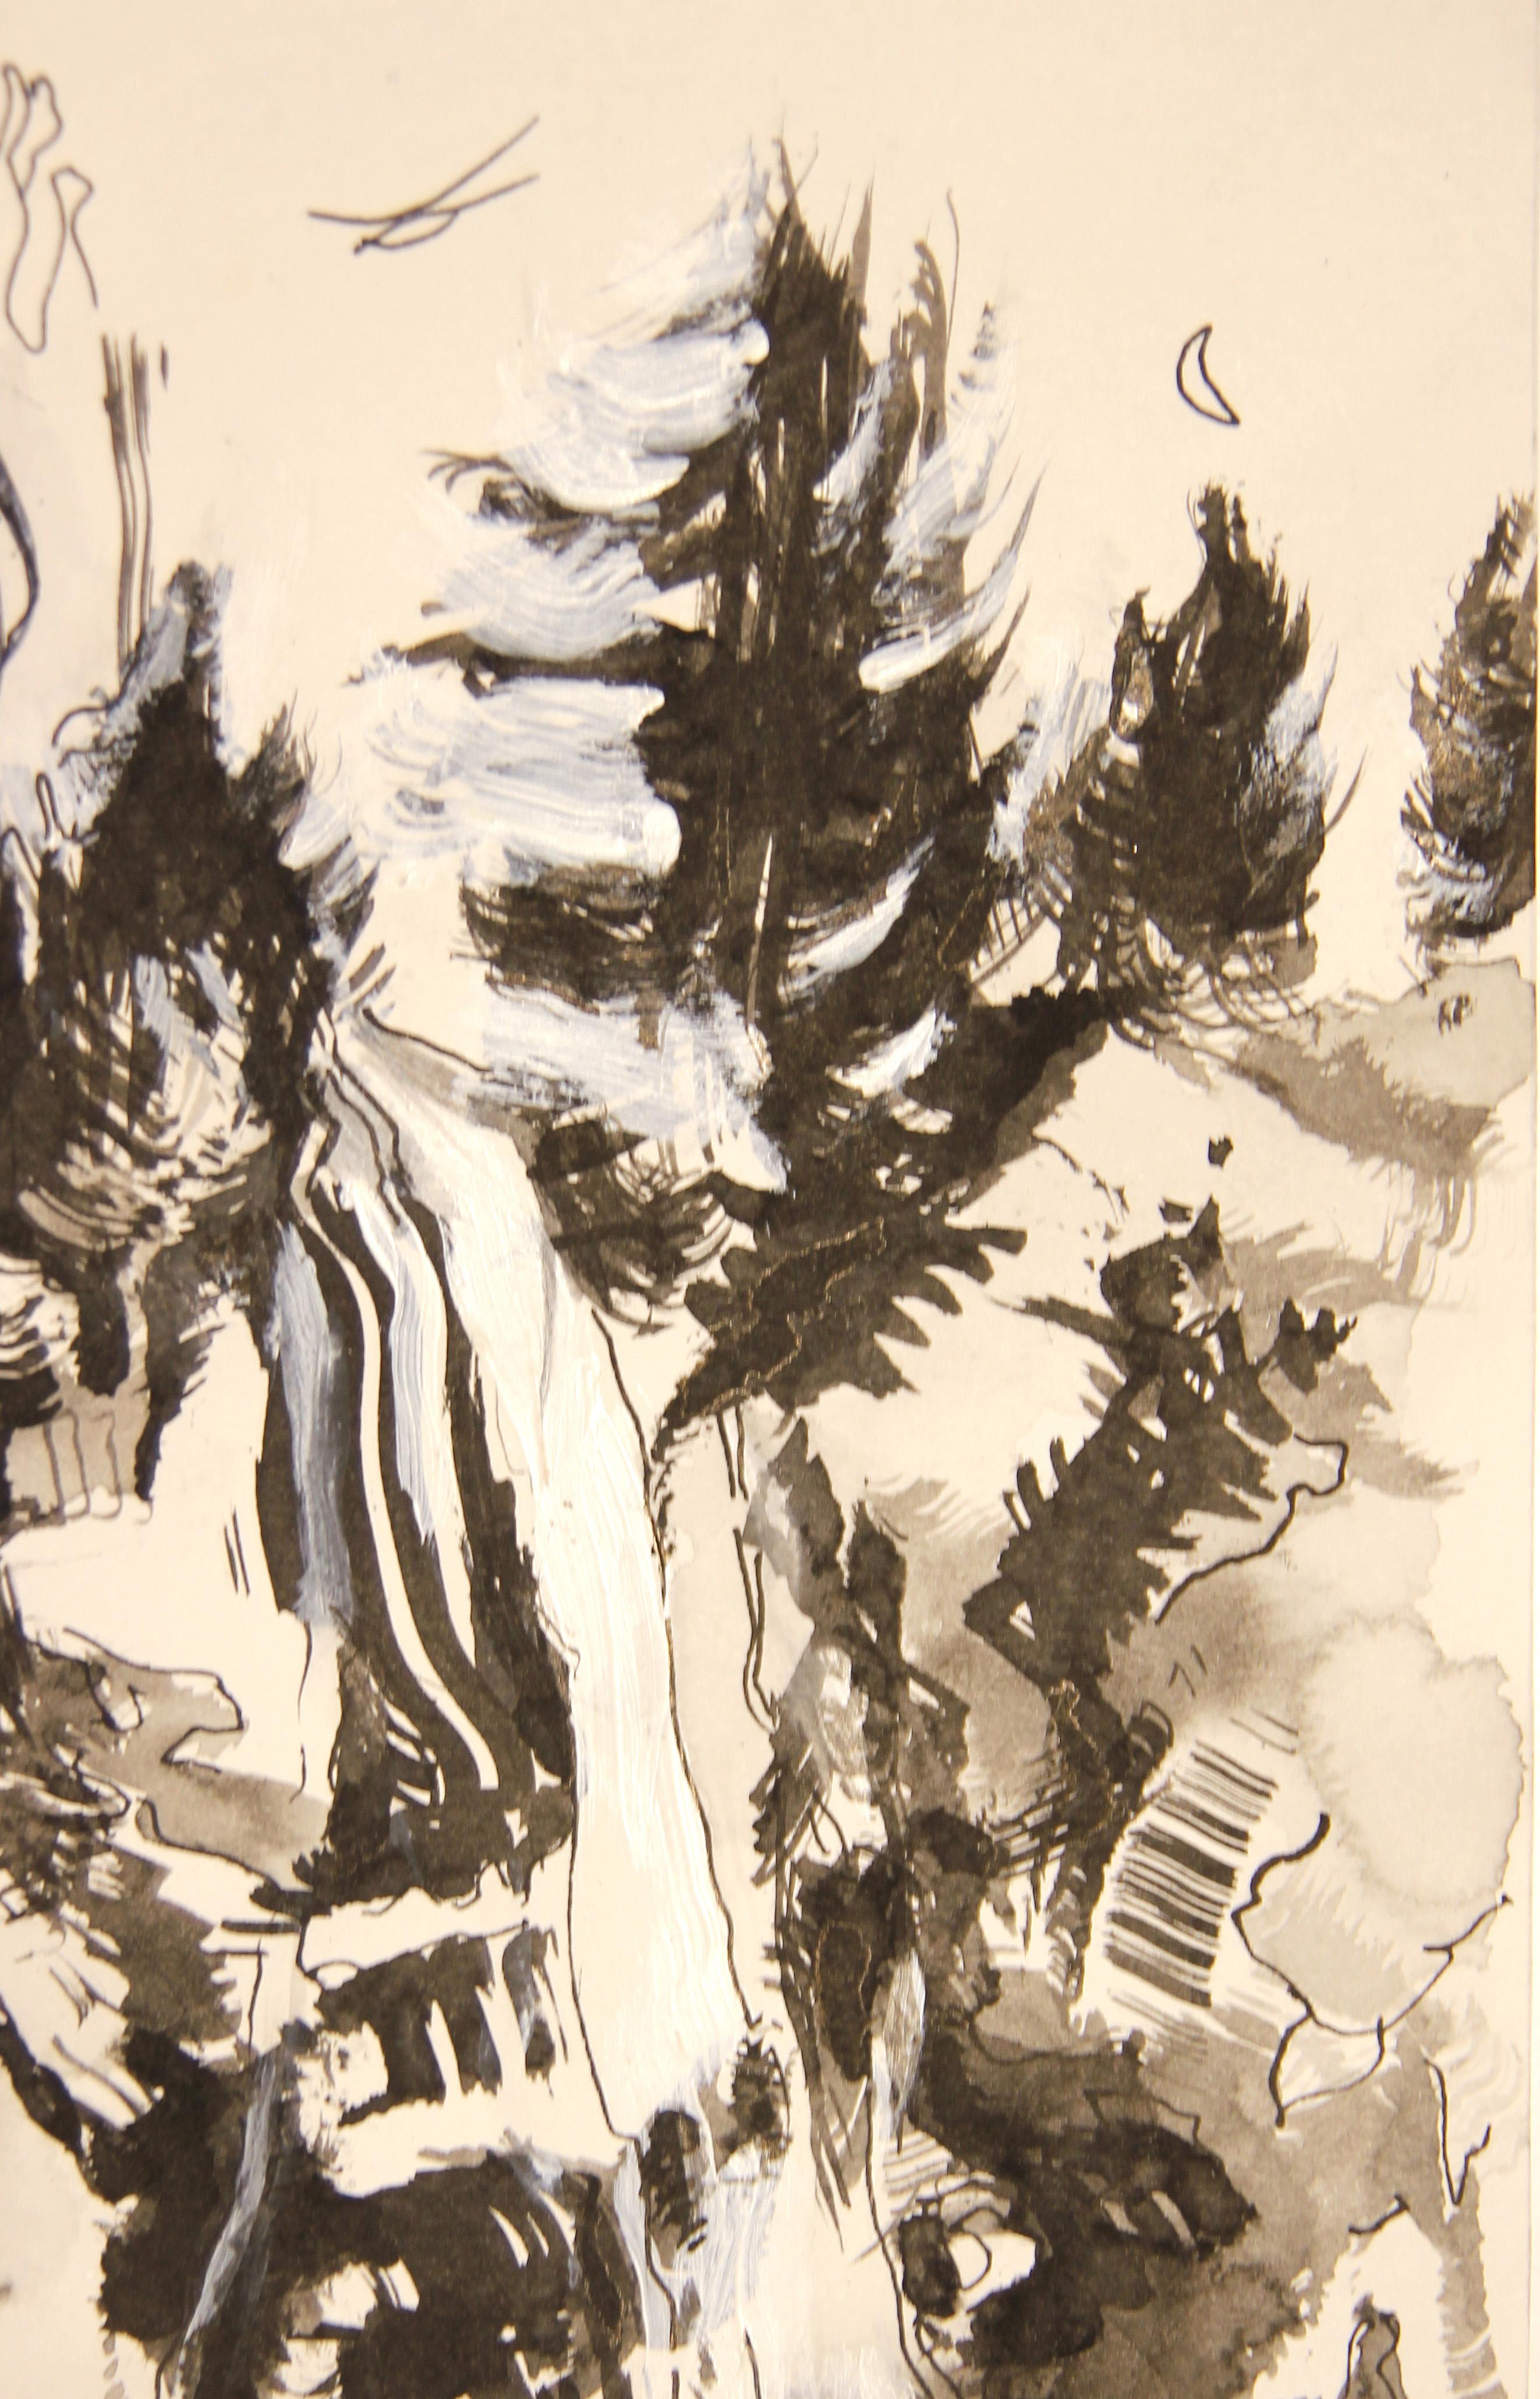 Moderne abstrakte schwarz-weiß-graue Landschaftsmalerei der amerikanischen Künstlerin Jane Tate. Das Werk zeichnet sich durch einen zentralen Wasserfall aus, der kaskadenförmig zu den darunter liegenden Becken hinabfällt. Signiert und betitelt am